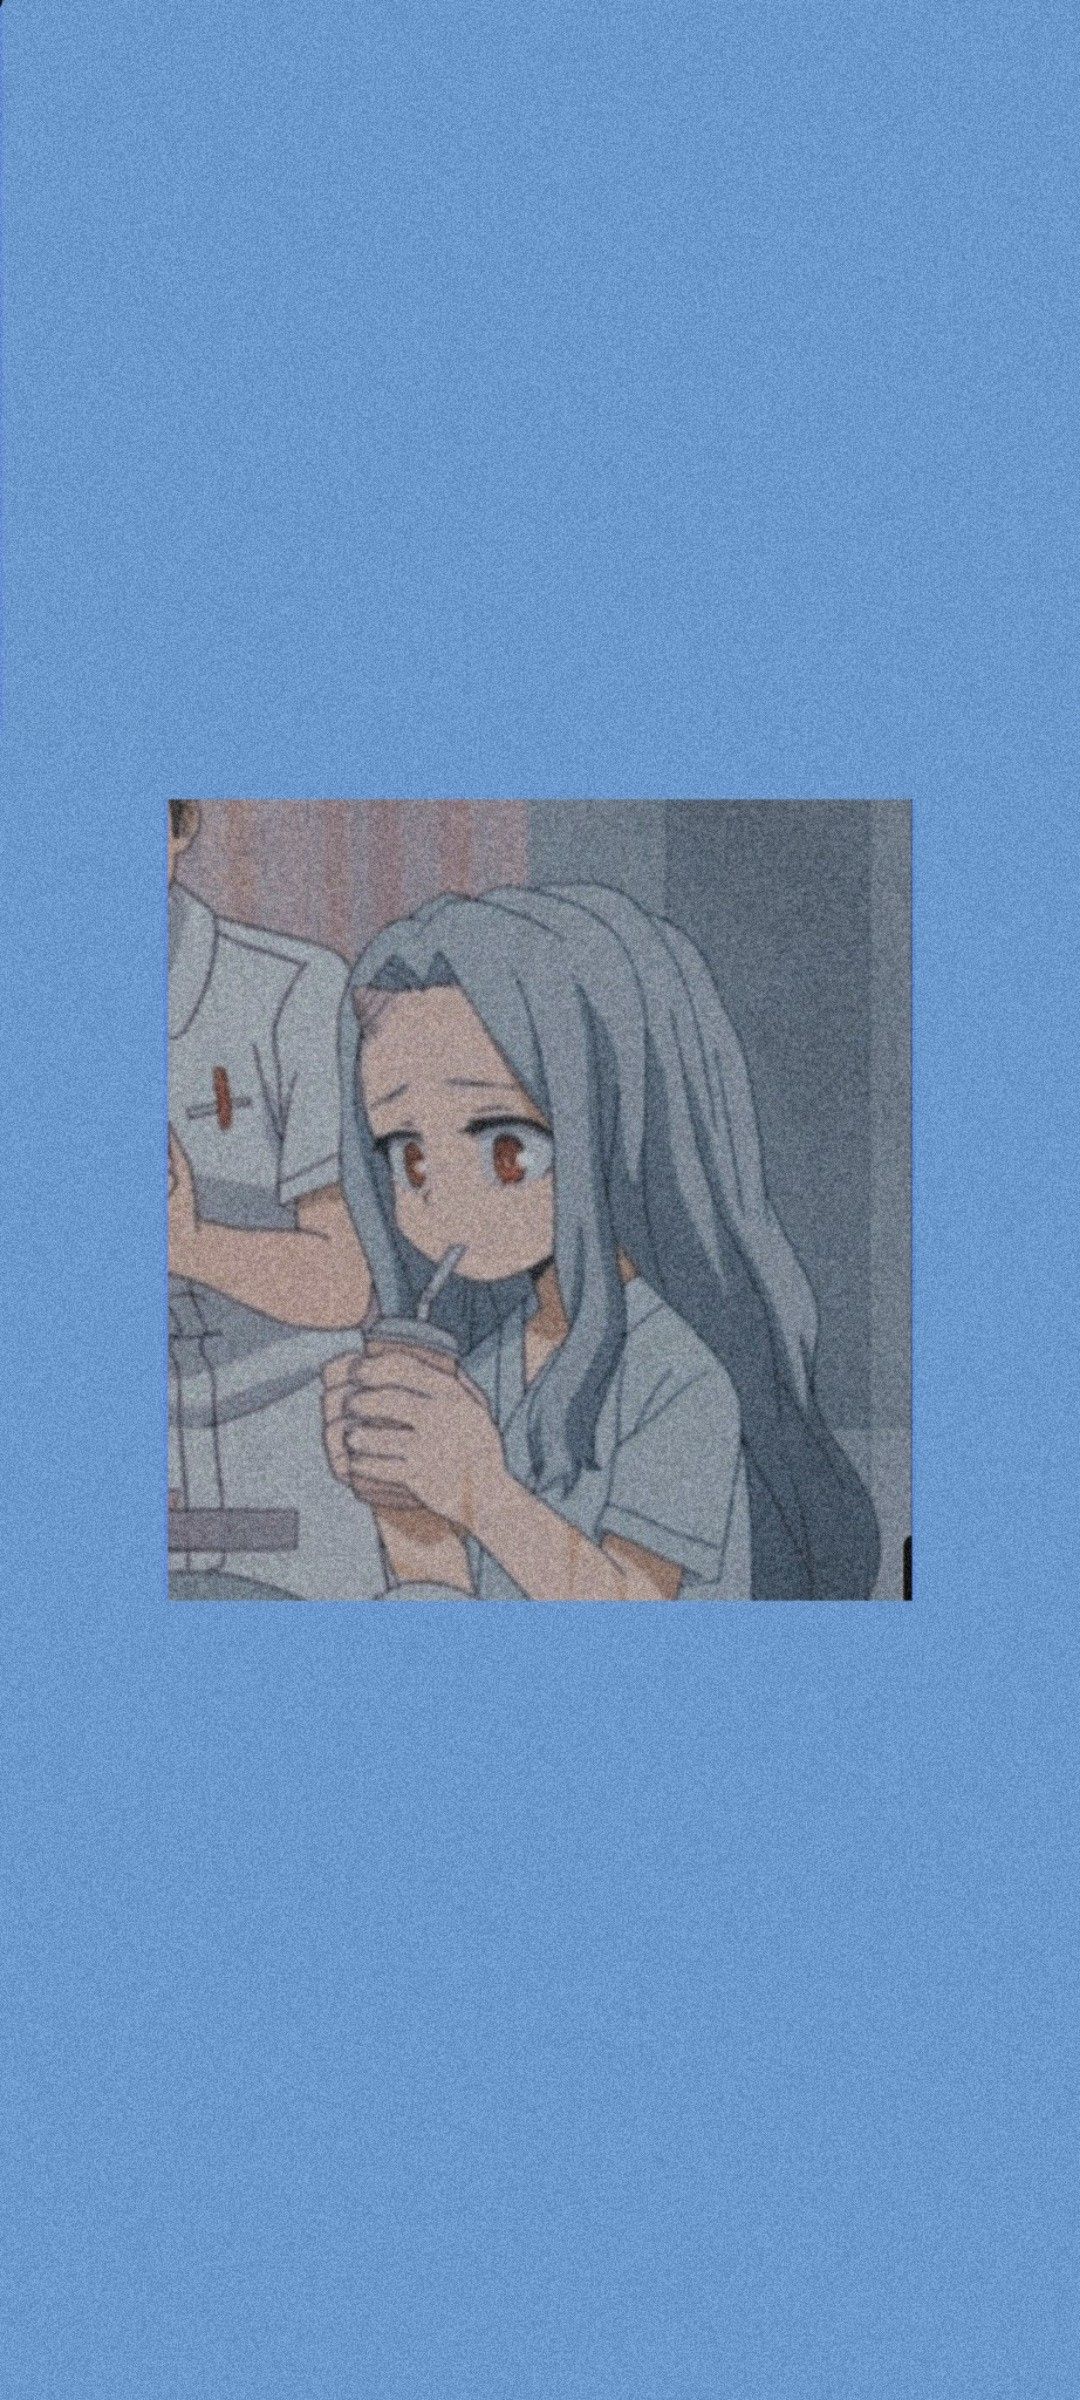 Anime aesthetic background blue phone background - Blue anime